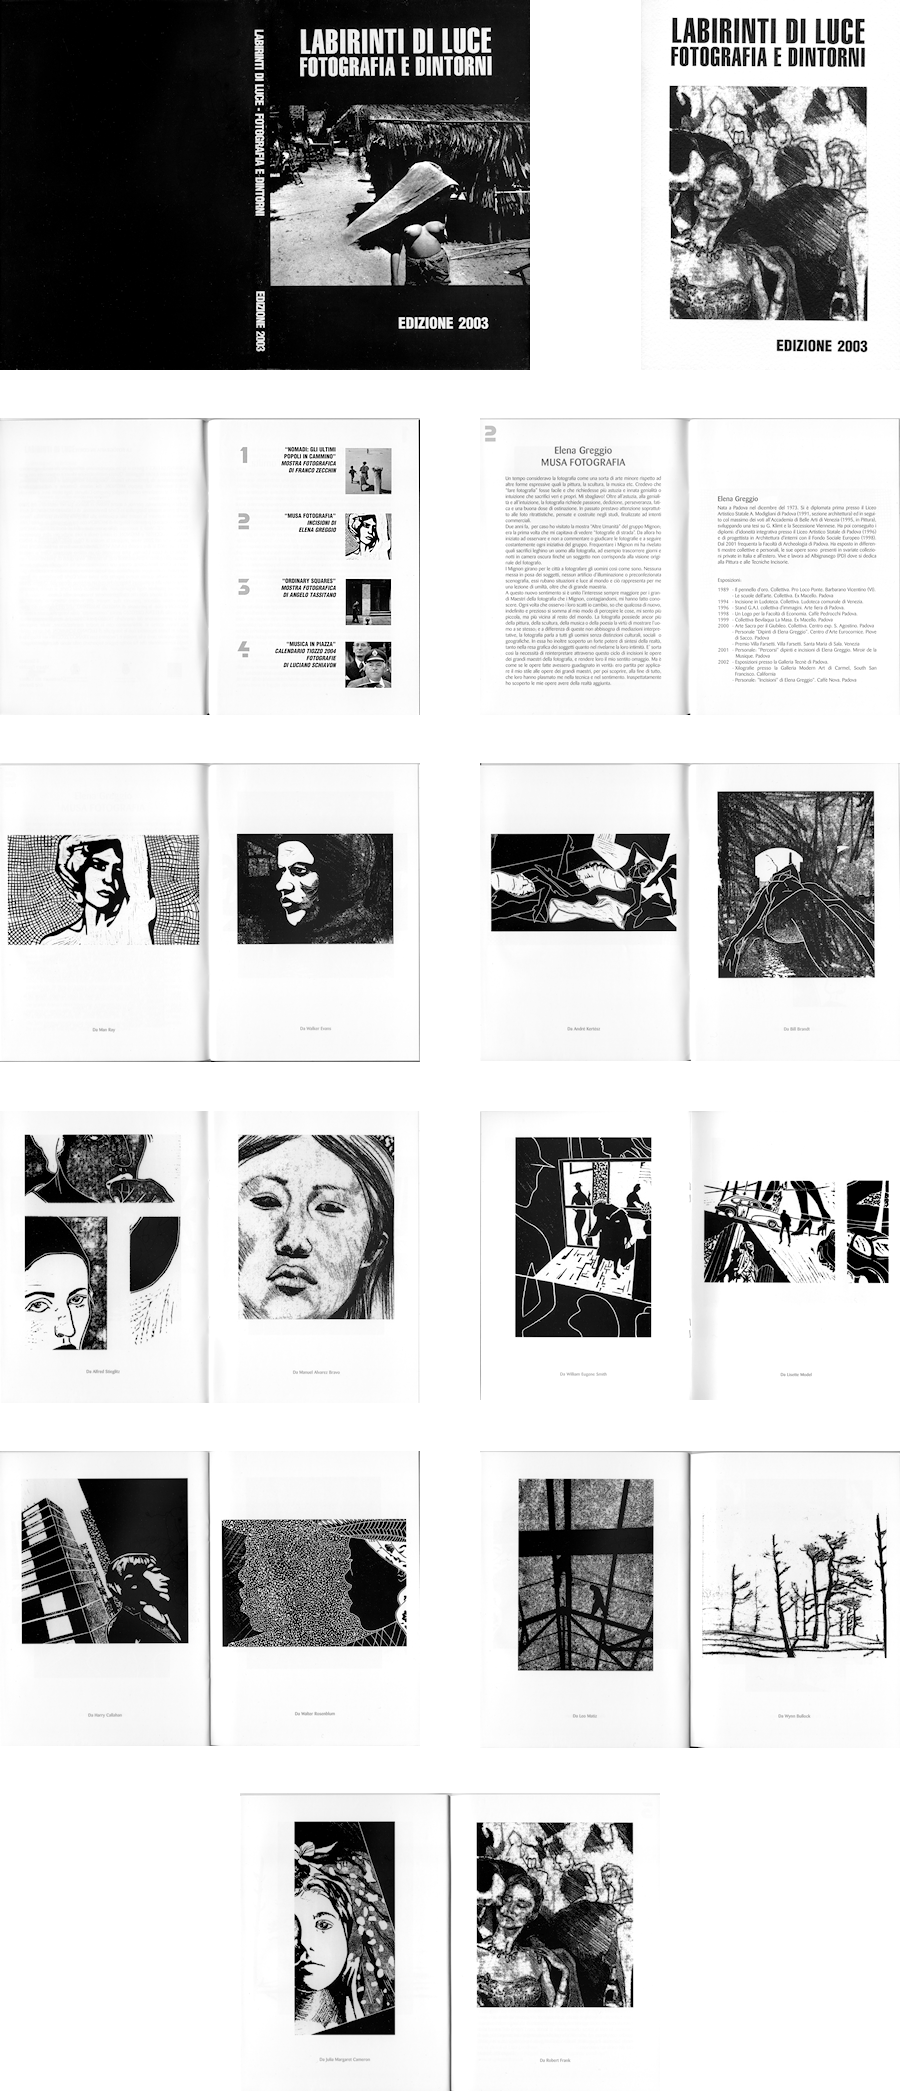 Musa Fotografia, Elena Greggio. Labirinti di Luce 2003. Catalogo.
Serie di stampe incisorie ispirate alle opere dei grandi maestri della fotografia